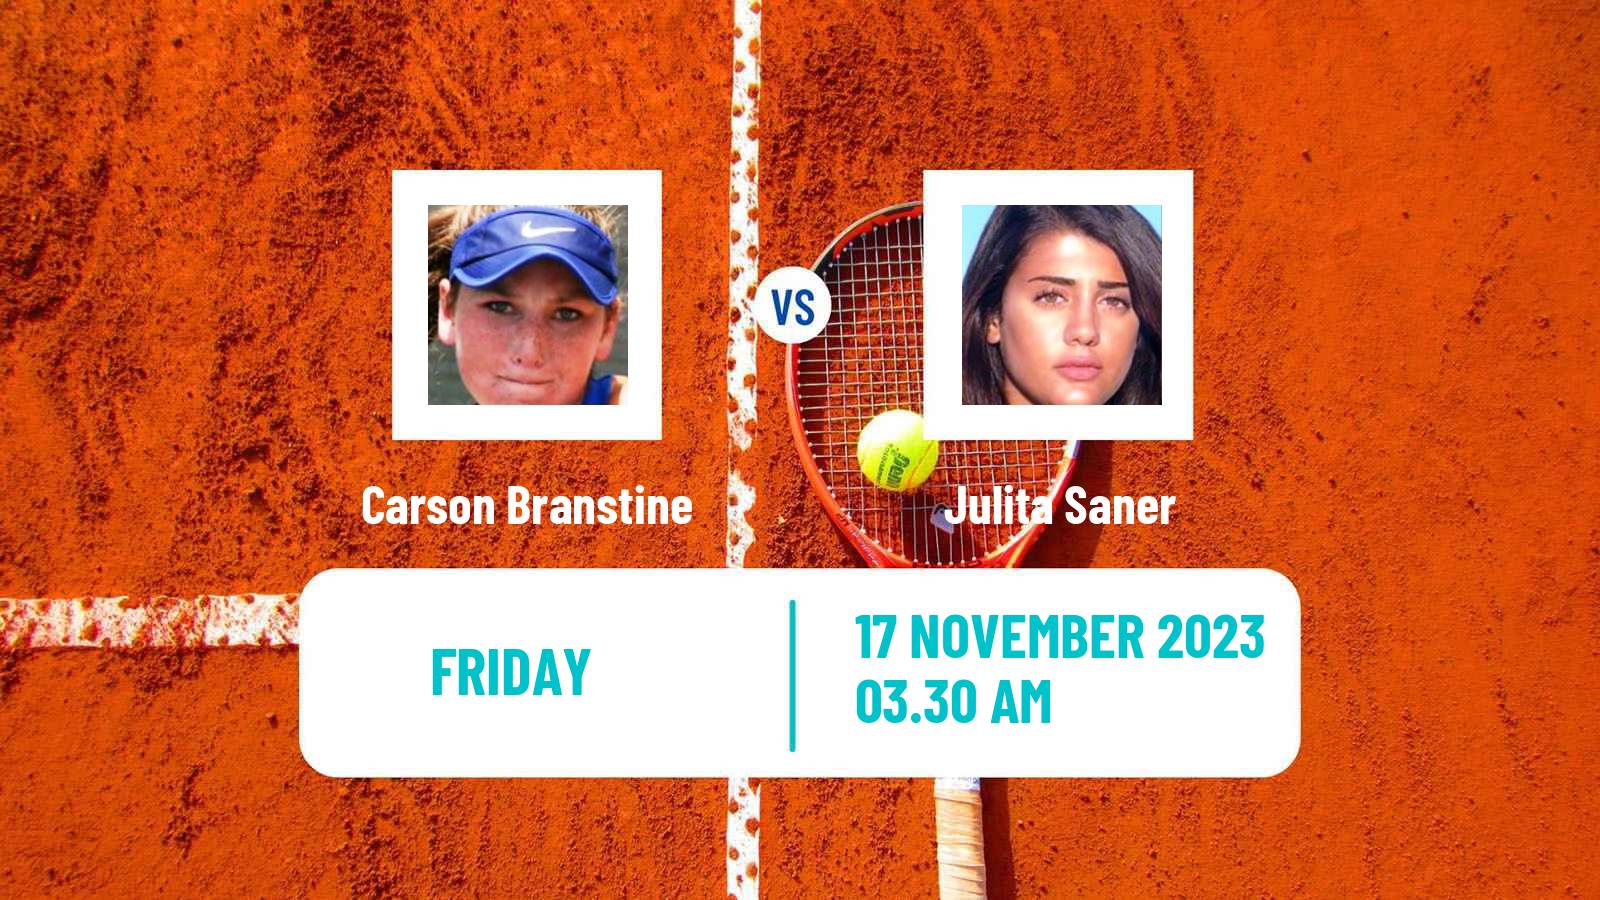 Tennis ITF W15 Monastir 40 Women Carson Branstine - Julita Saner